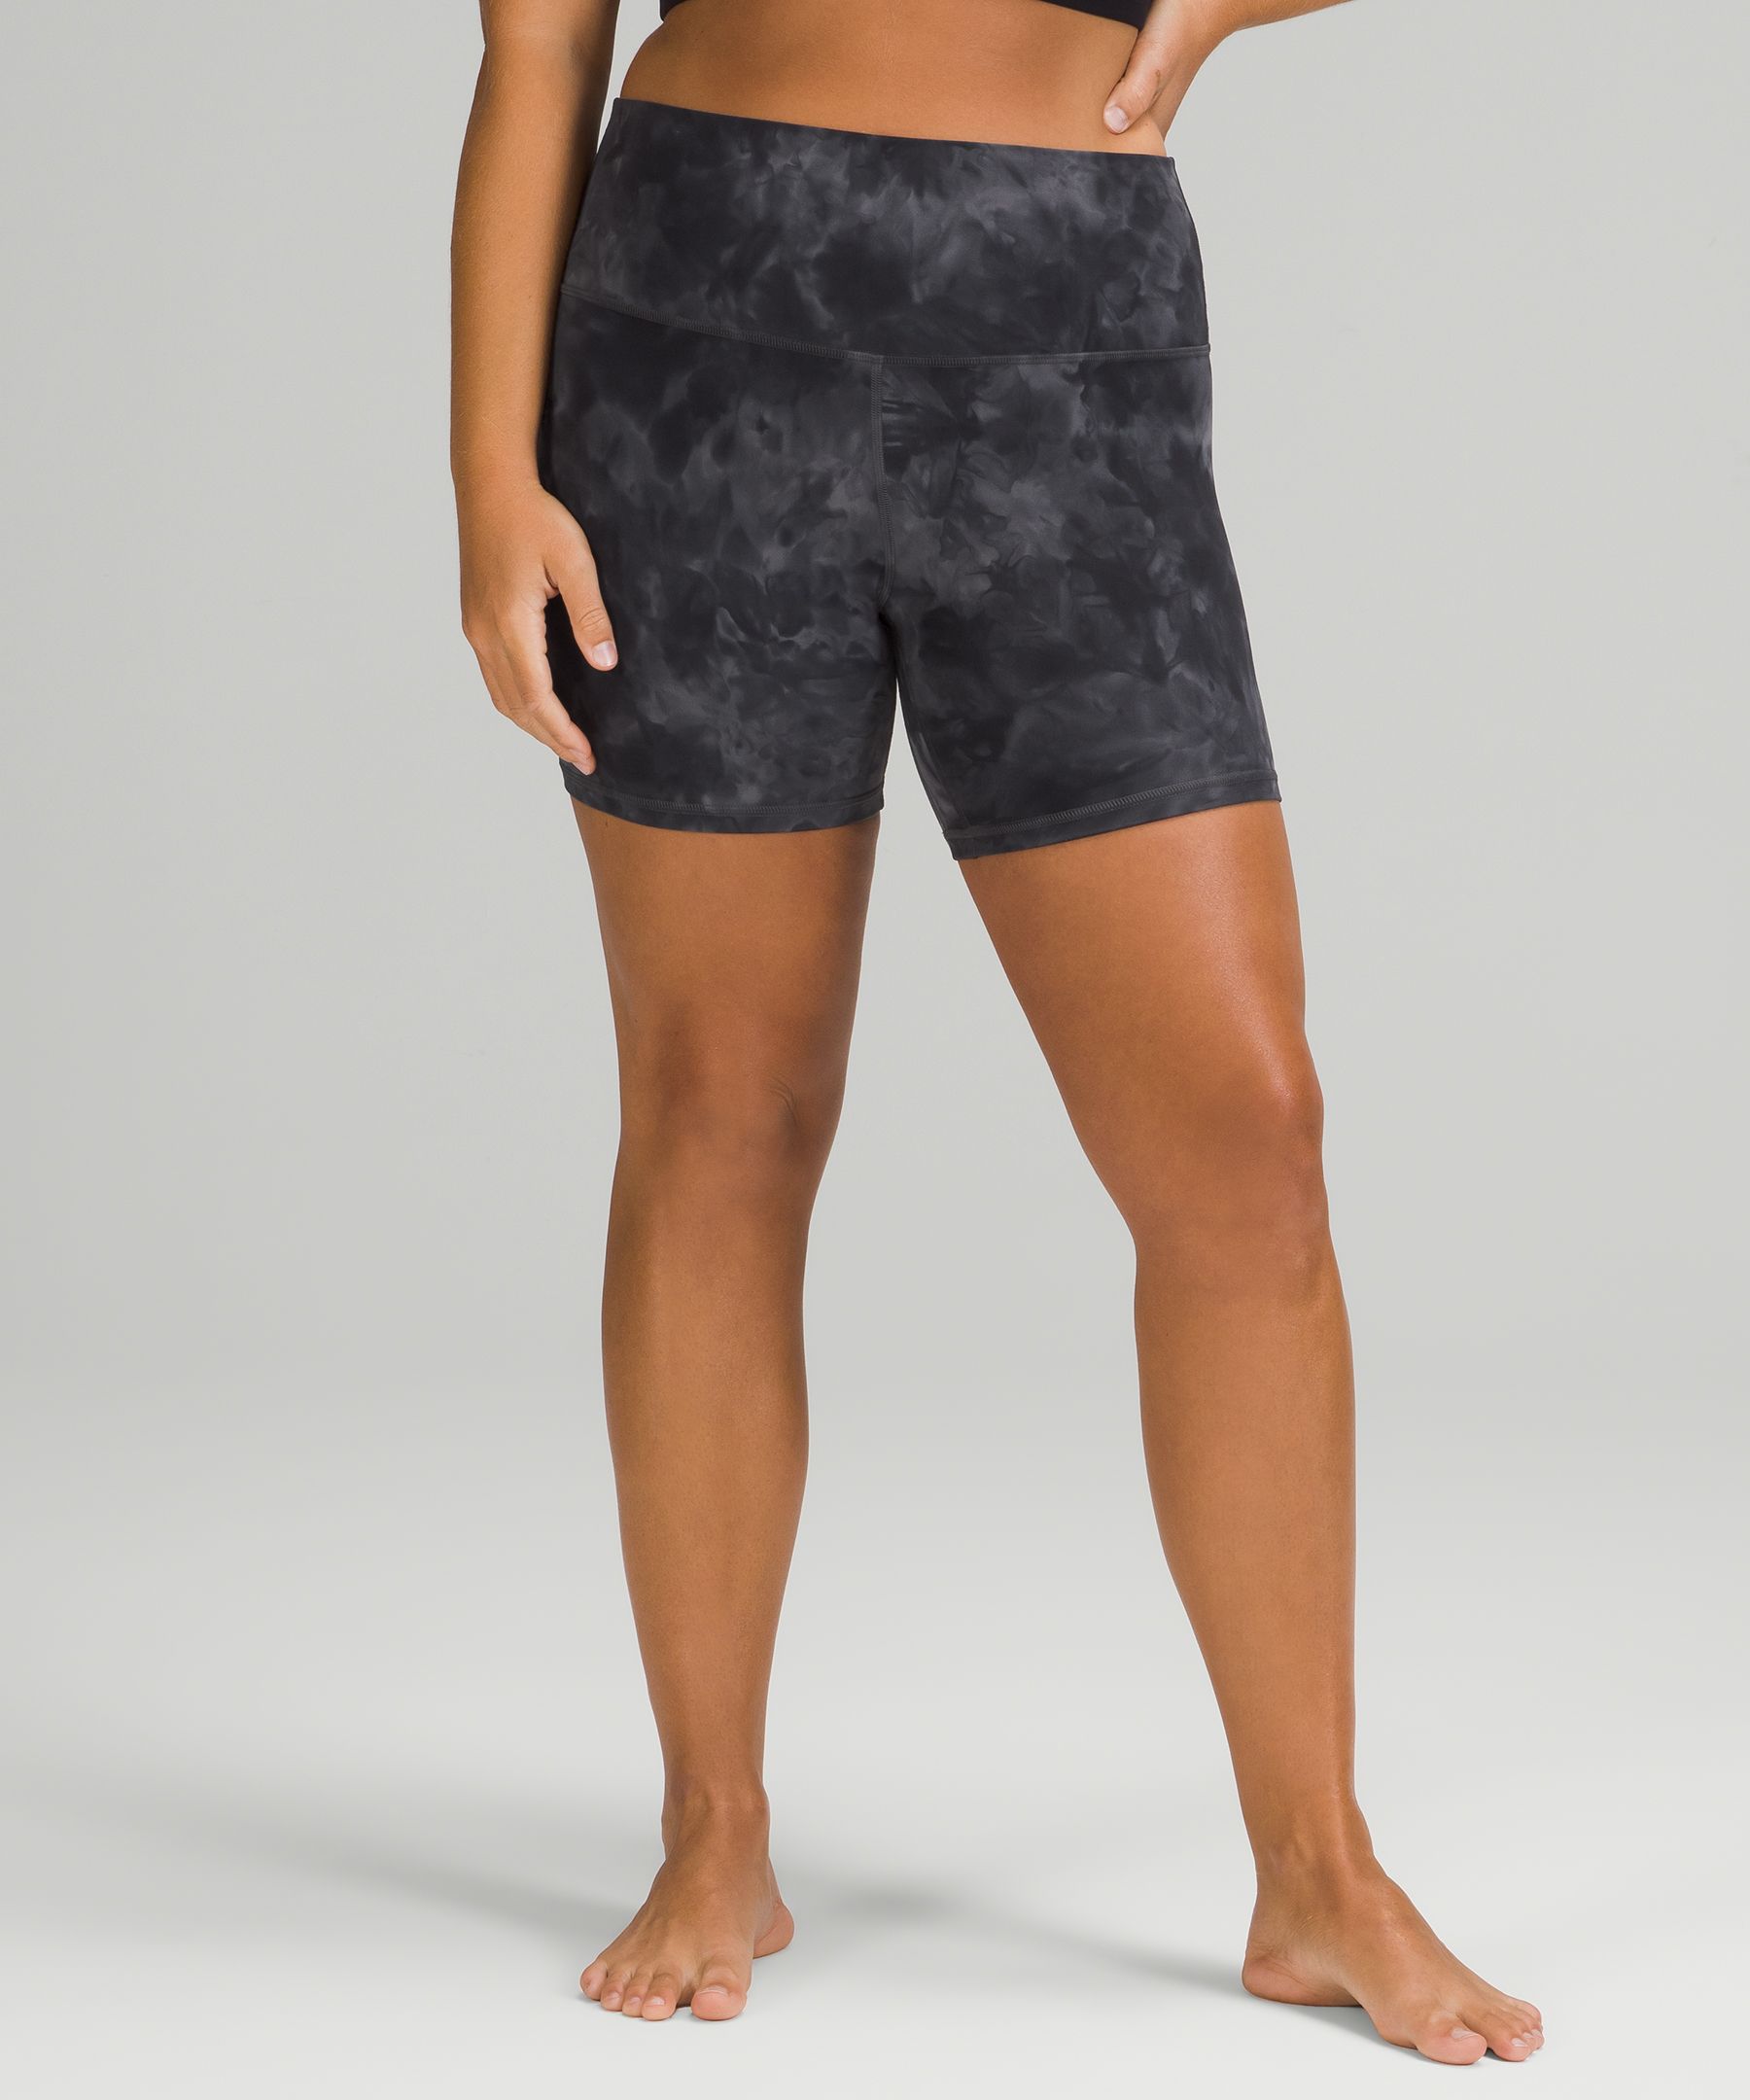 lululemon Align™ High-Rise Short 6, Women's Shorts